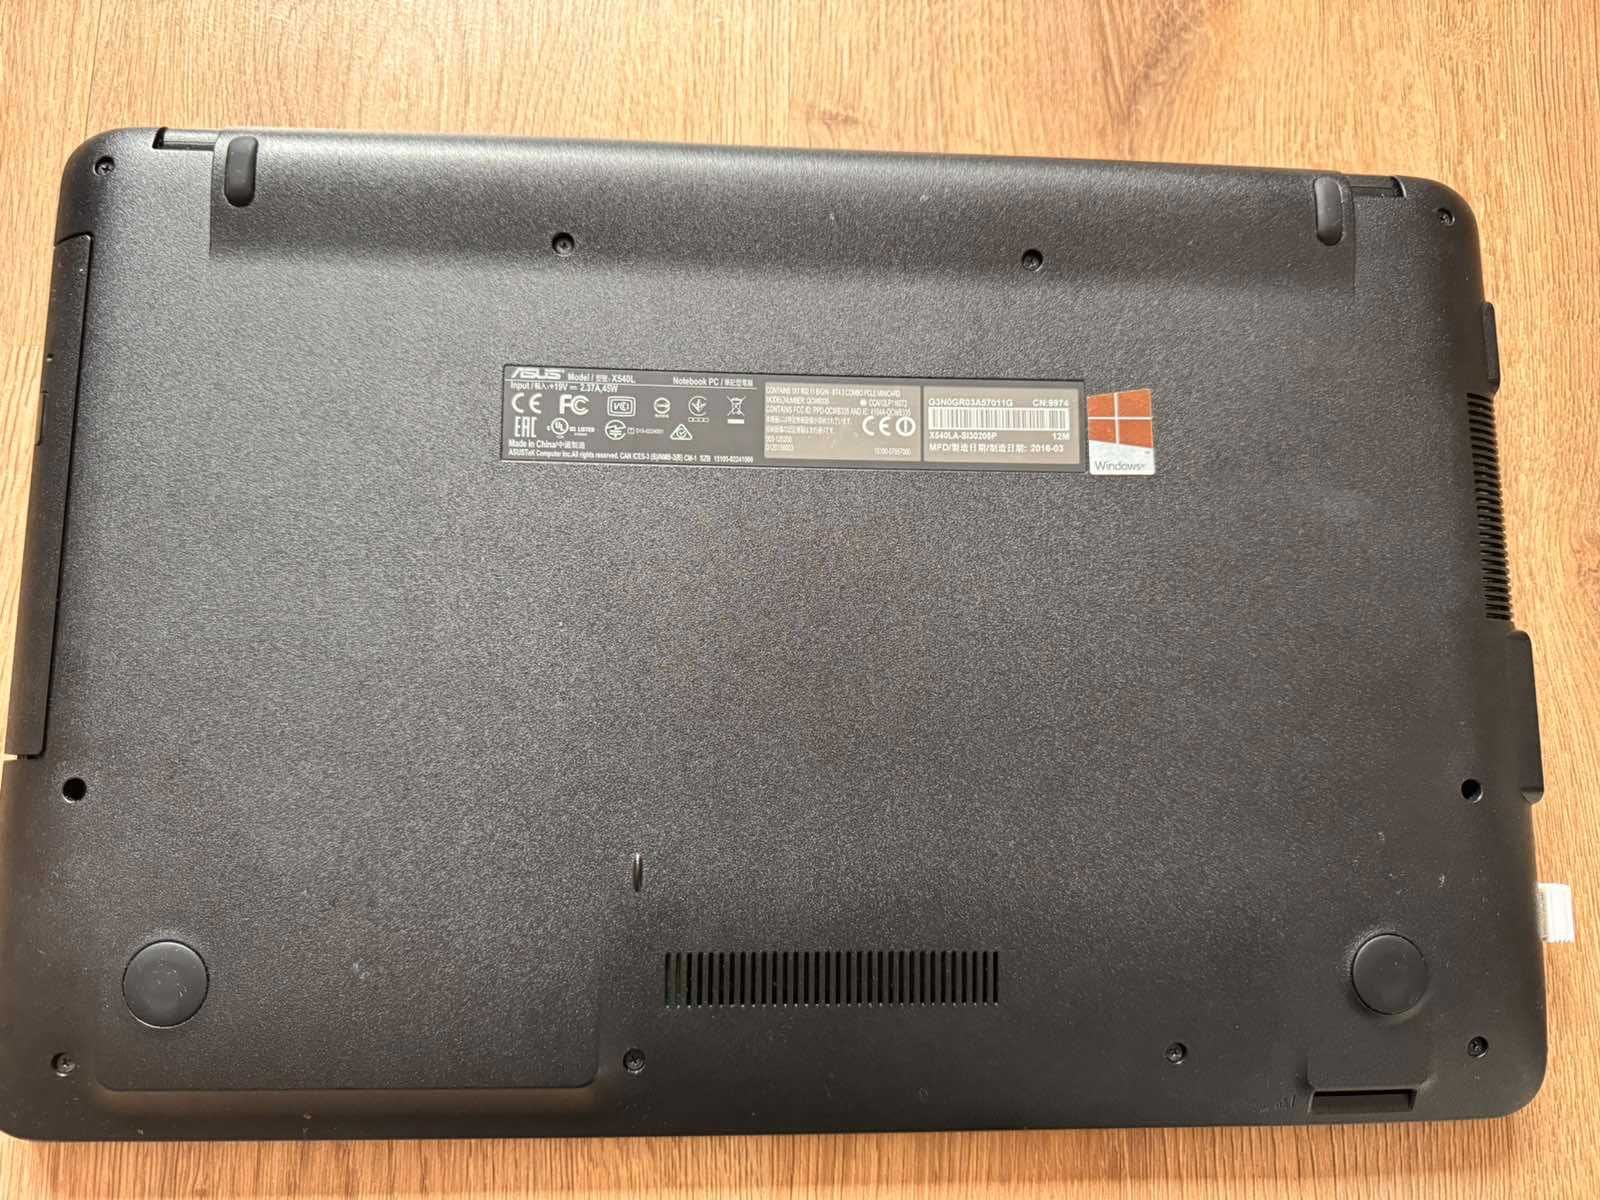 Лаптоп Asus X540L, 15.6" HD, i3-5020U, 4GB, 240GB SSD